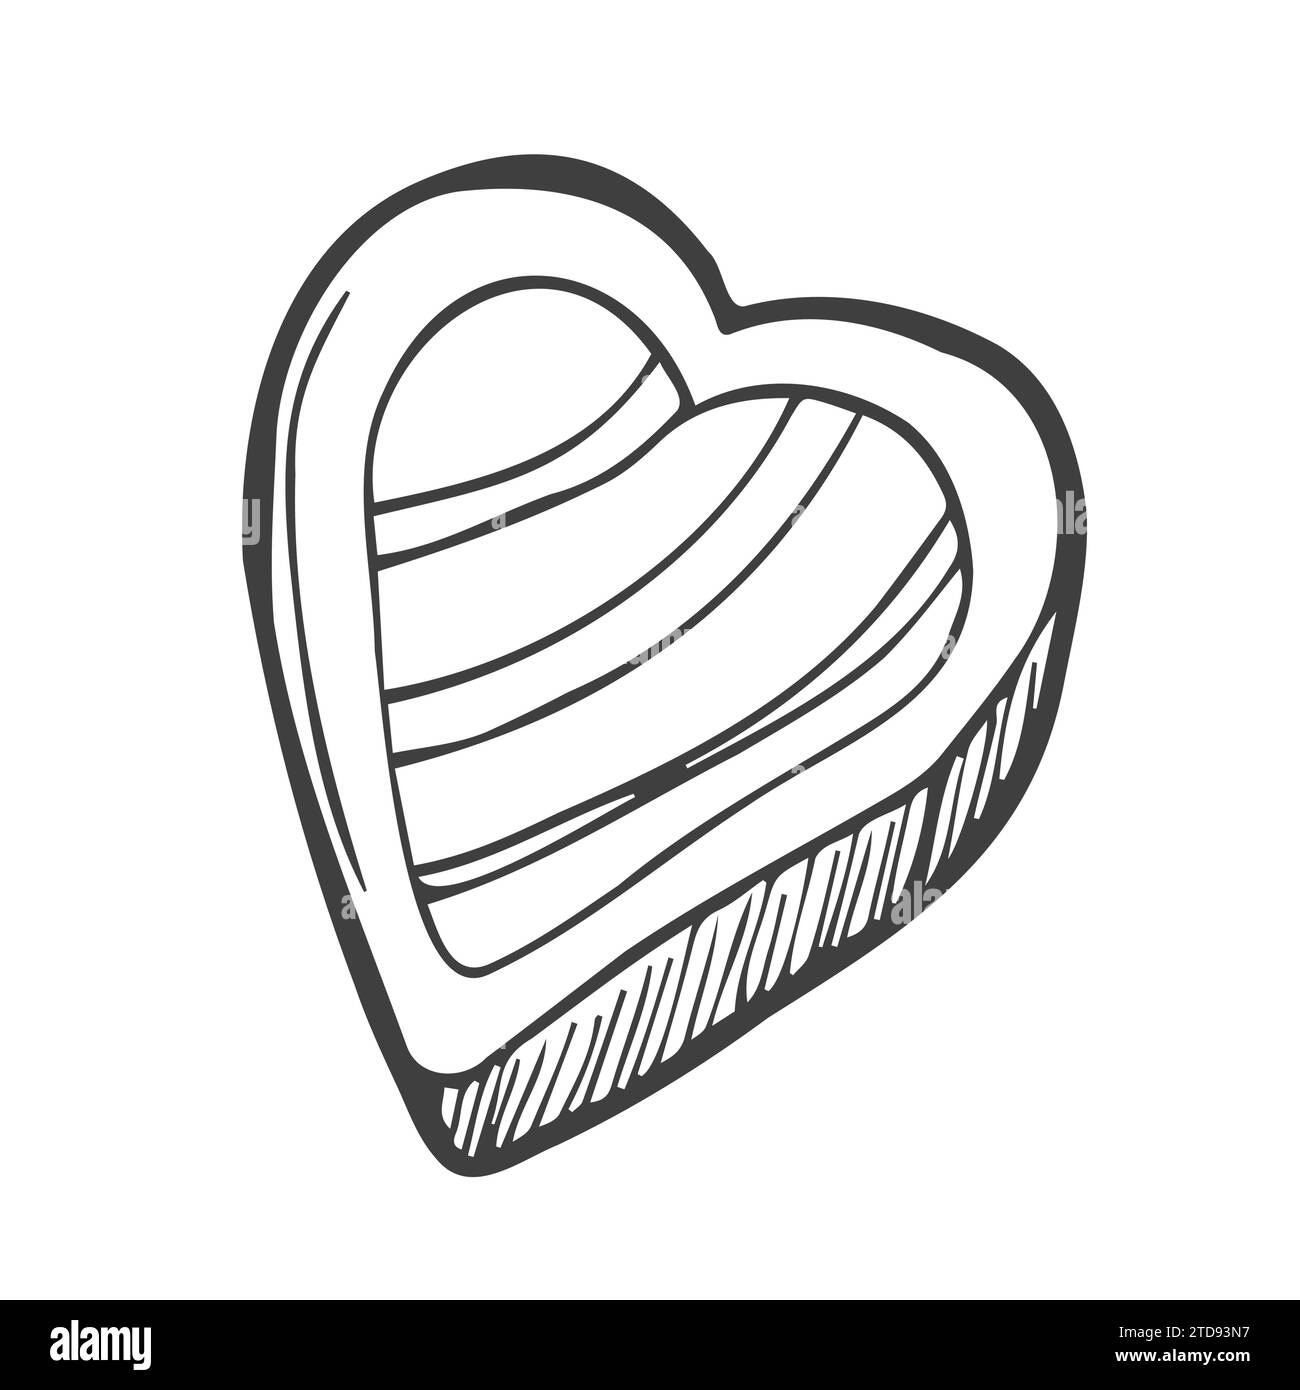 Vector mano dibujado doodle dulce corazón caramelo aislado en fondo blanco. Esquema plano de conversación de dibujos animados Ilustración del Vector